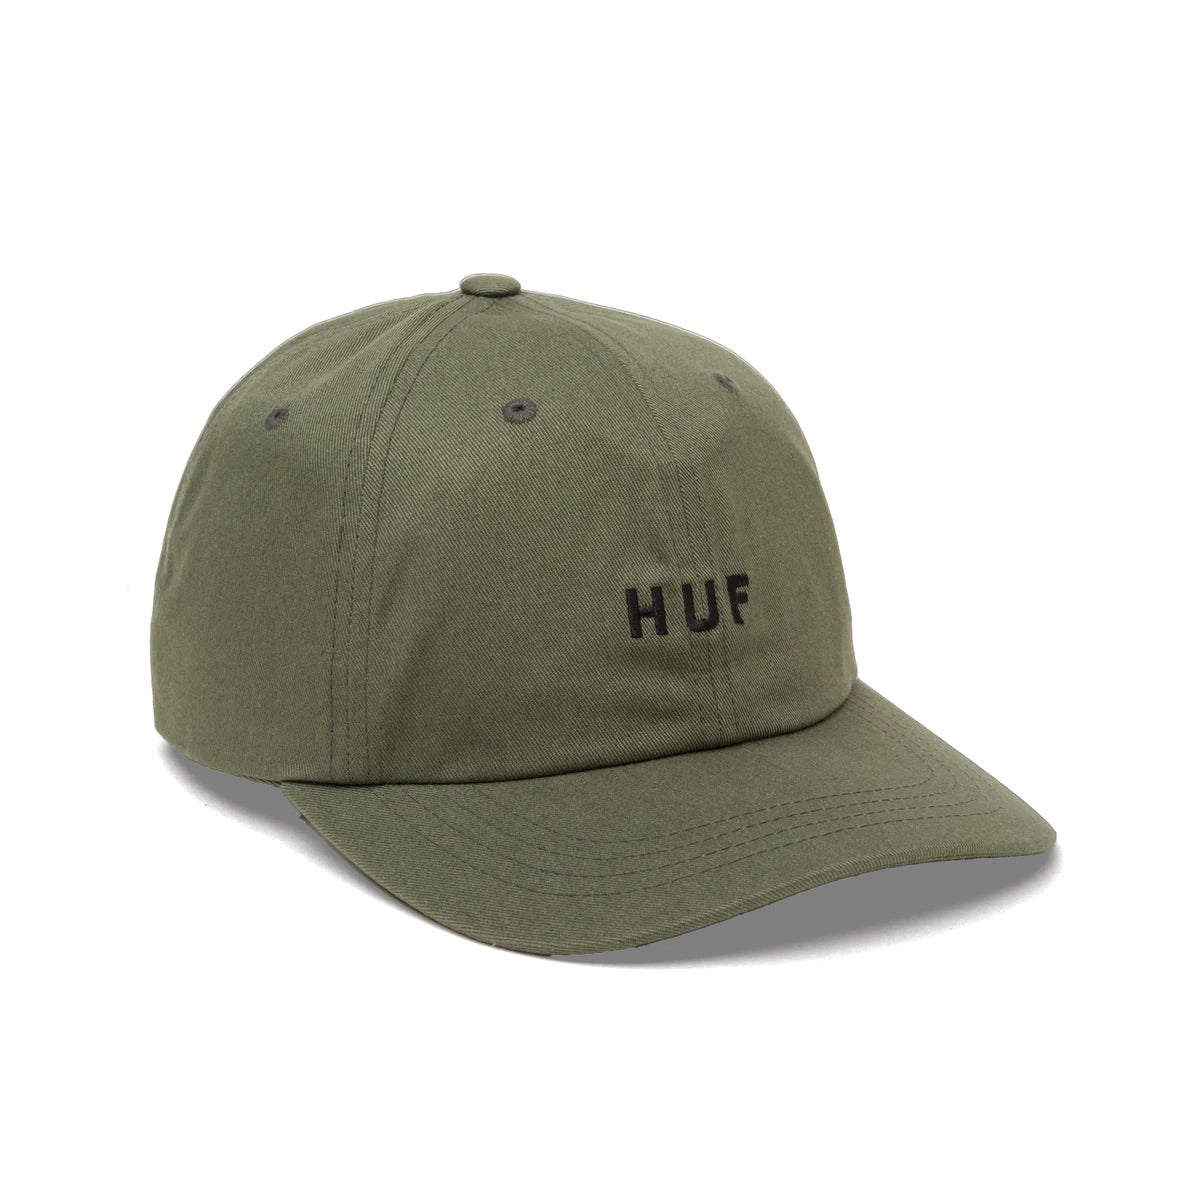 Huf Set OG 6 Panel Hat